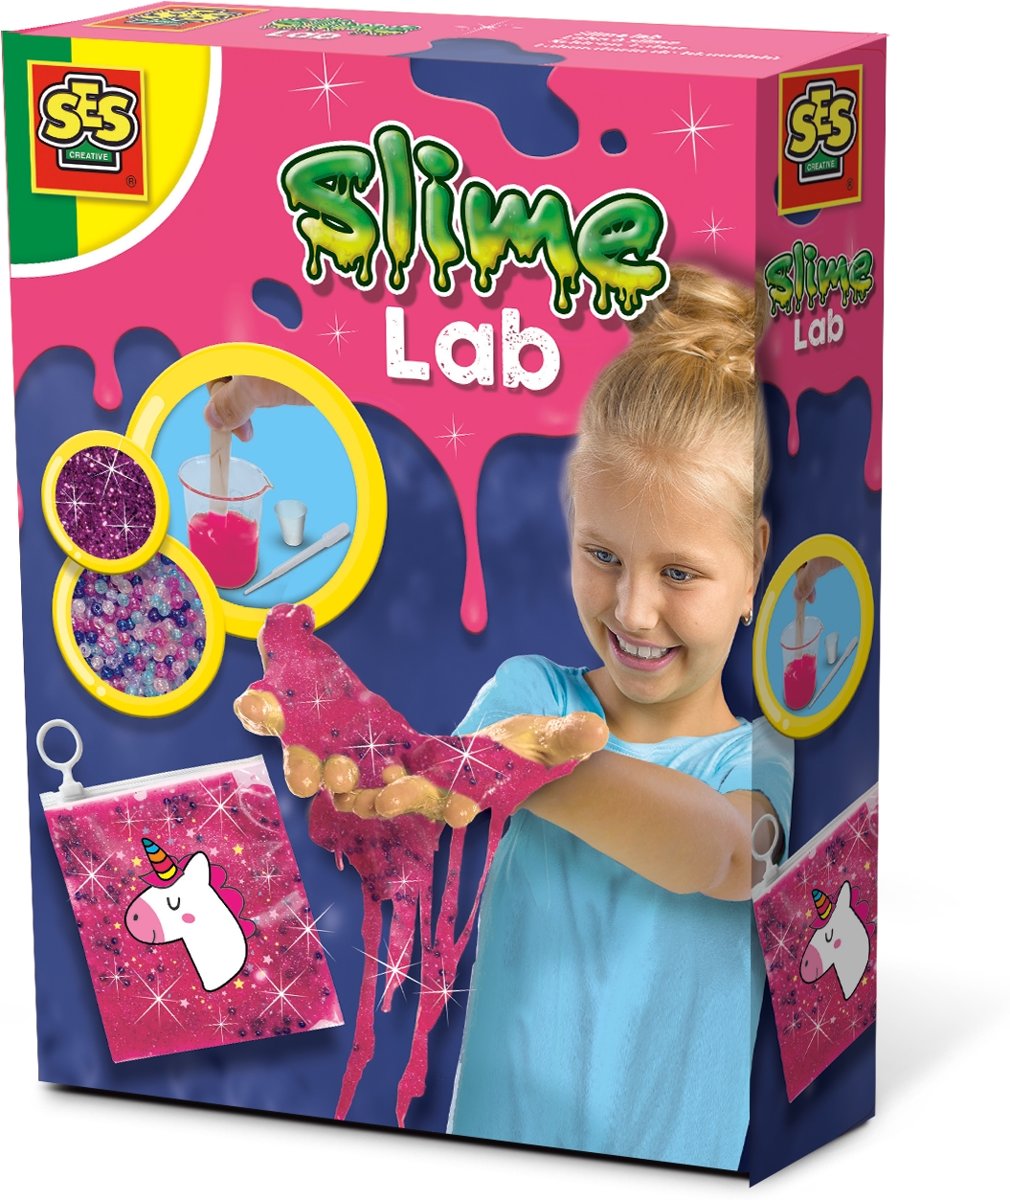 Slime lab - Unicorn